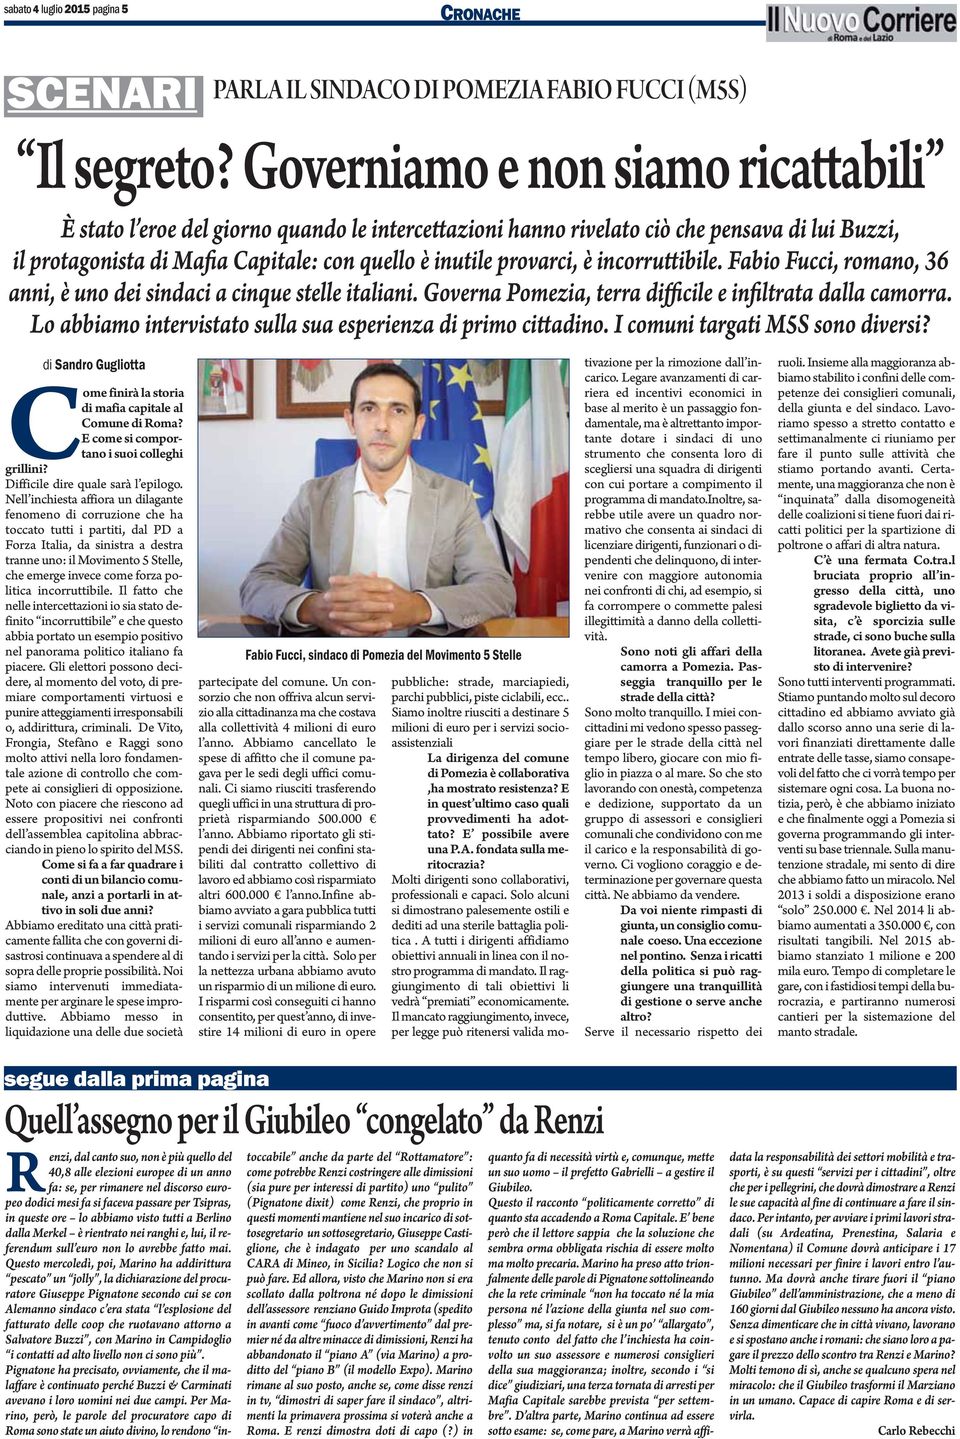 incorruttibile. Fabio Fucci, romano, 36 anni, è uno dei sindaci a cinque stelle italiani. Governa Pomezia, terra difficile e infiltrata dalla camorra.